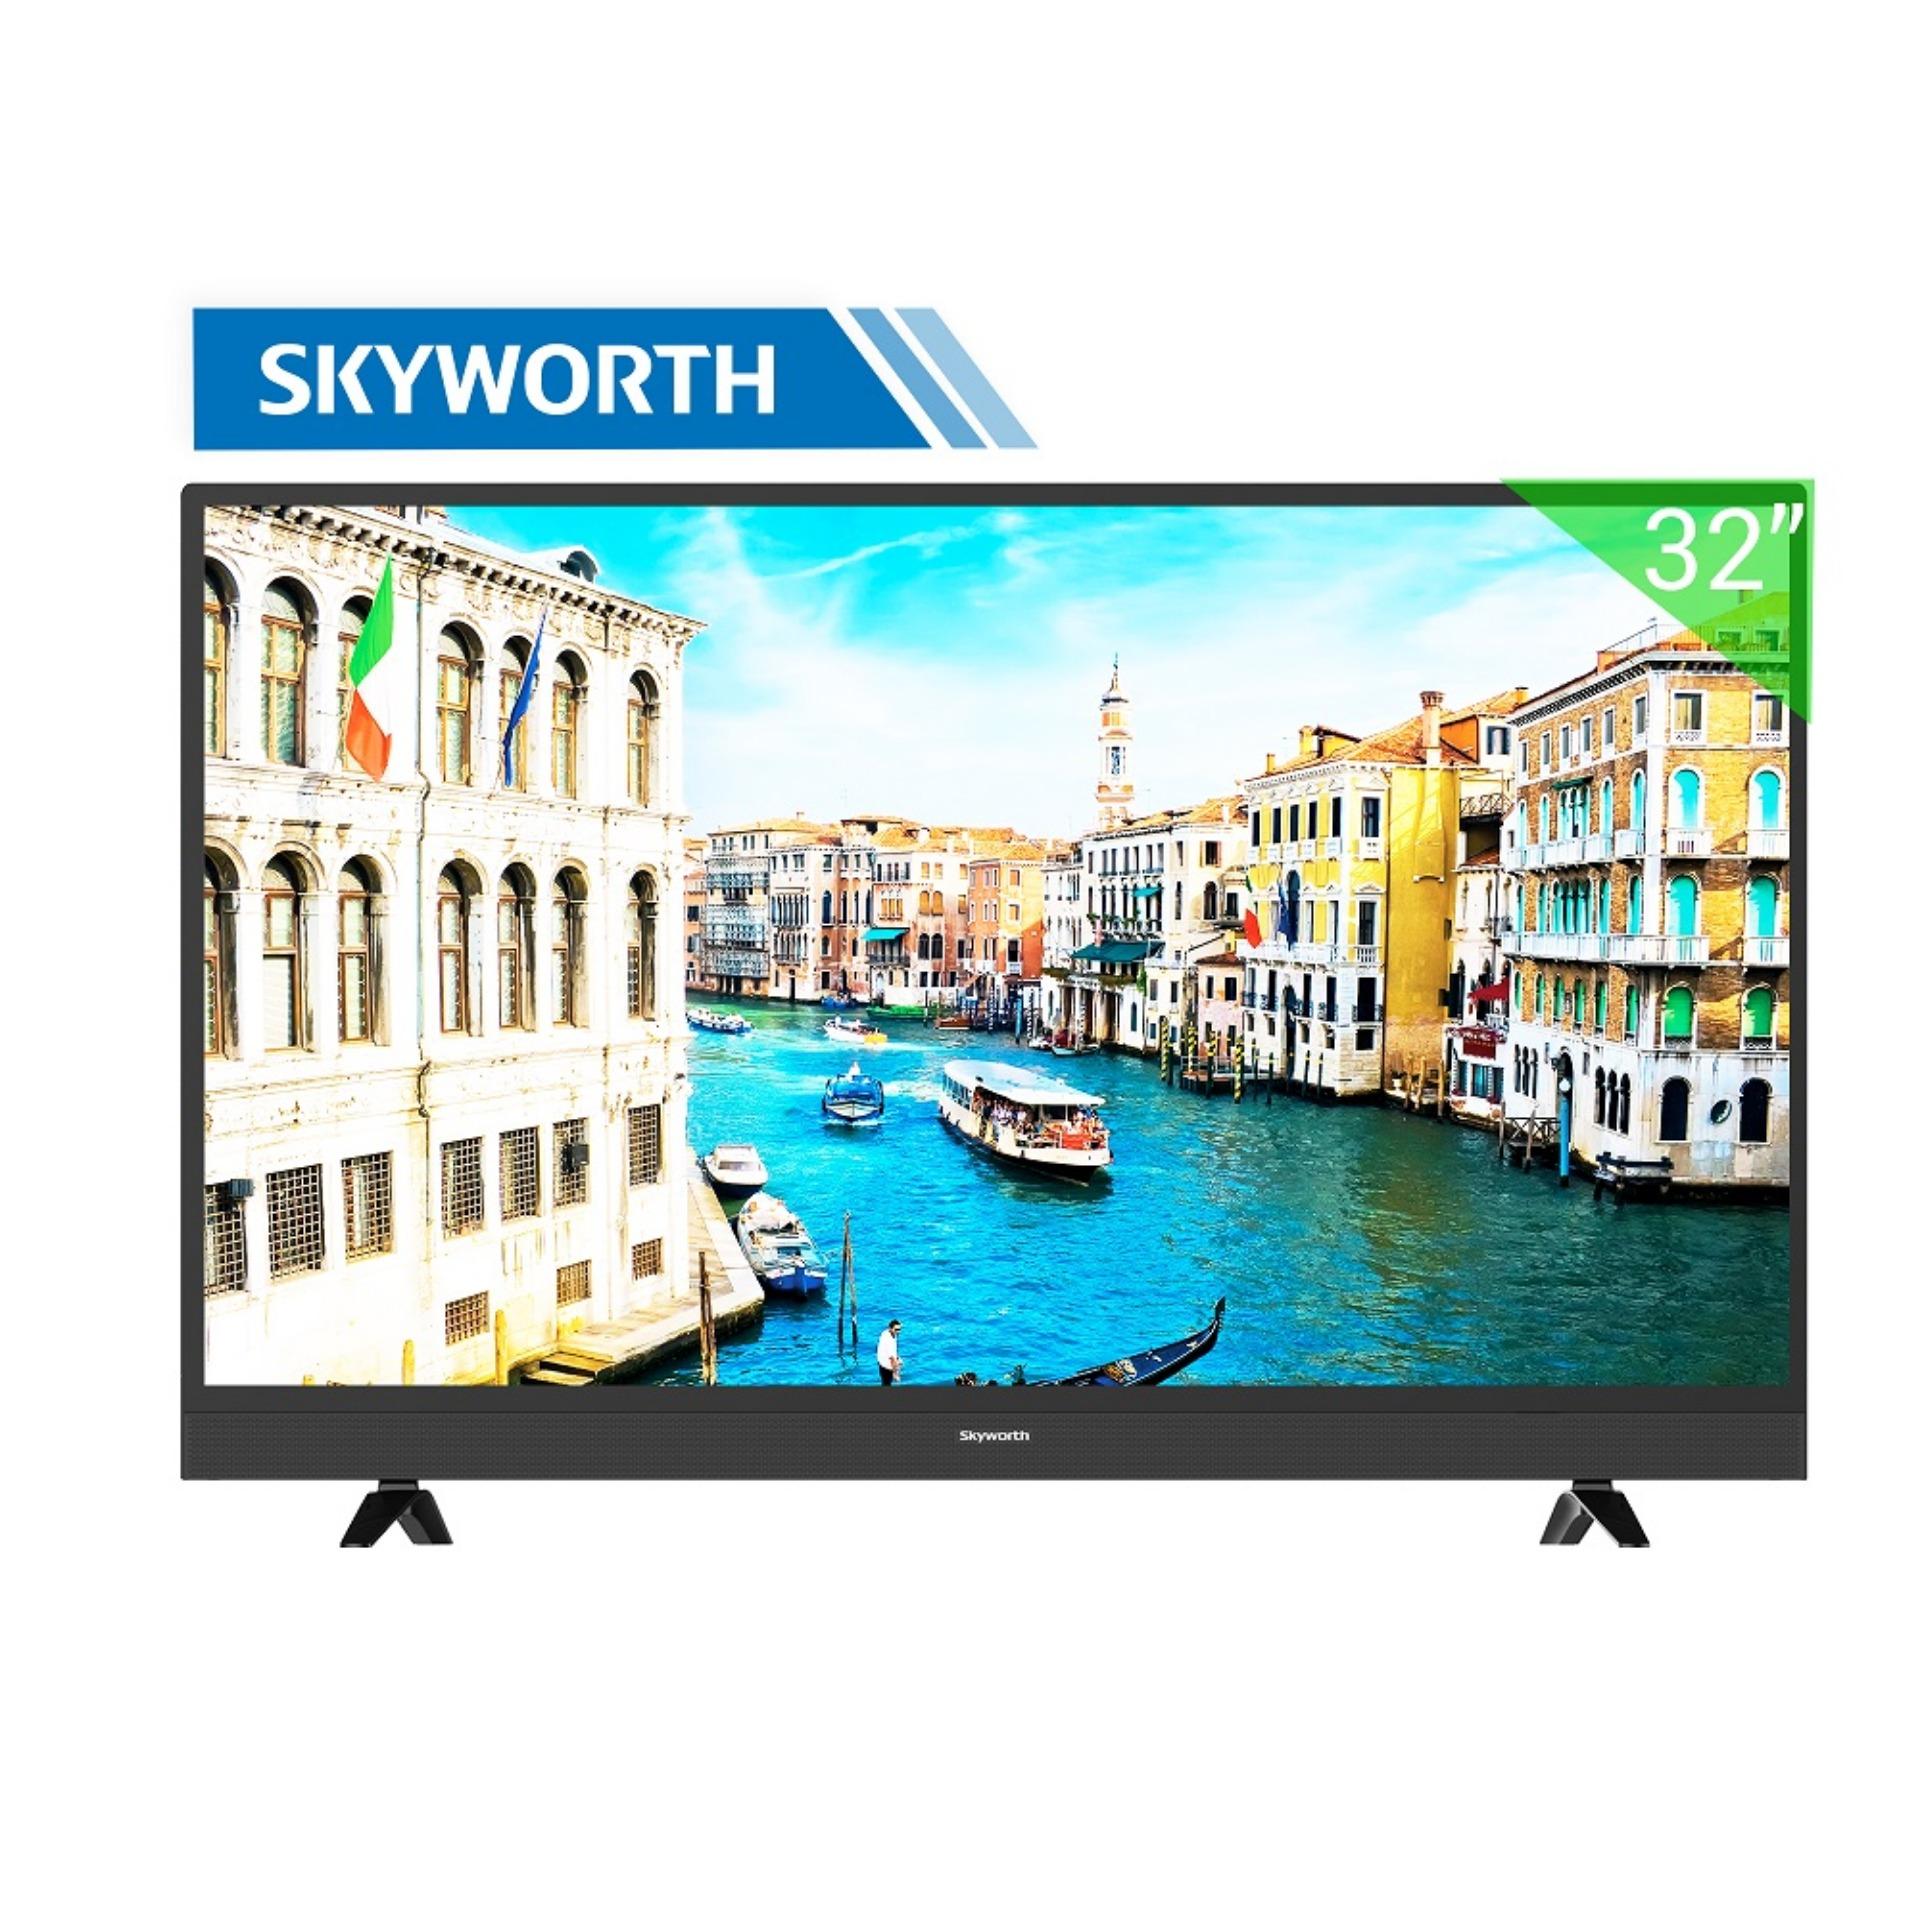 Smart TV Skyworth 32inch HD - Model 32S3A21T (Đen) - Hãng phân phối chính thức